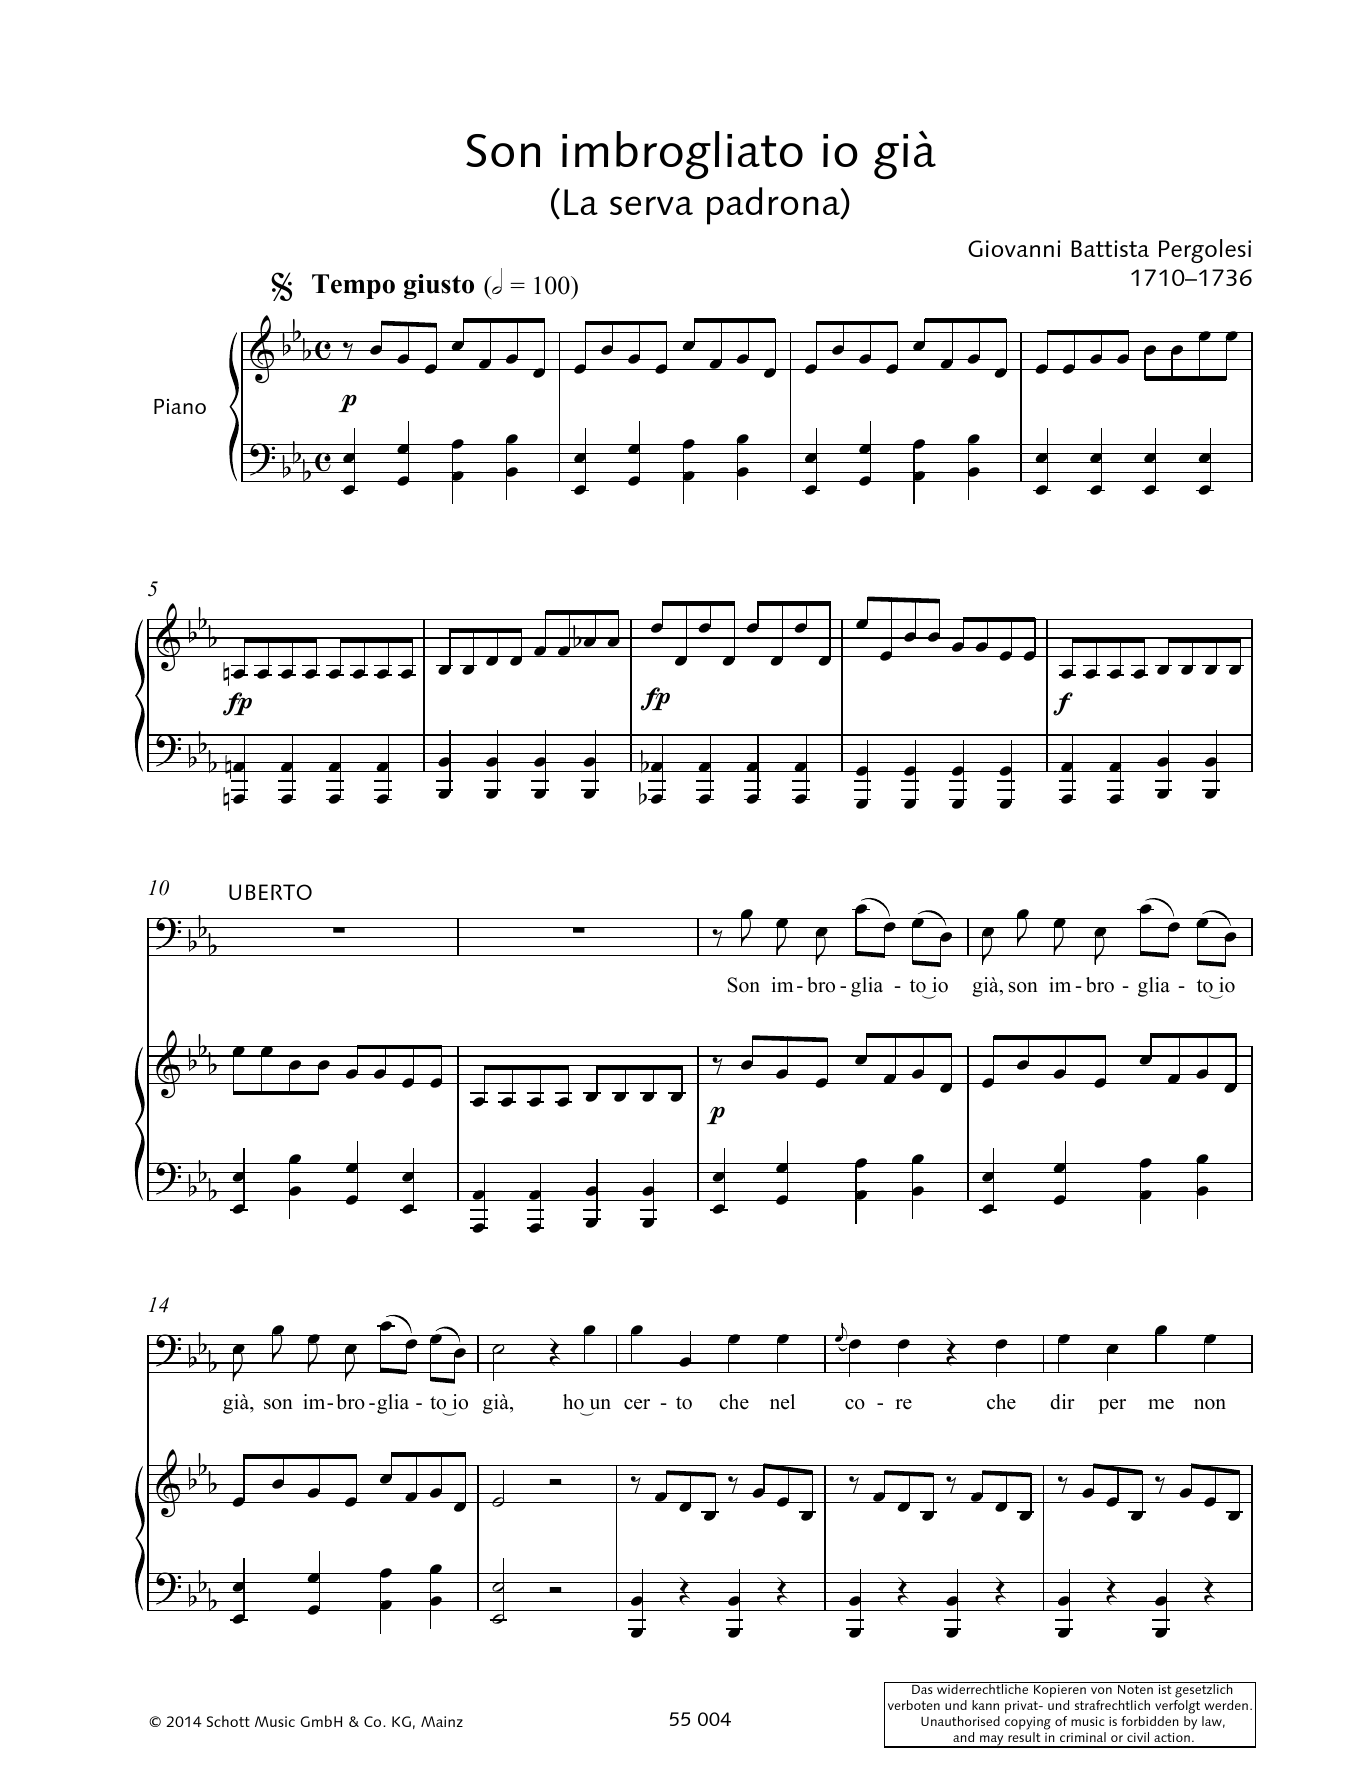 Giovanni Battista Pergolesi Son imbrogliato io già sheet music notes and chords arranged for Piano & Vocal